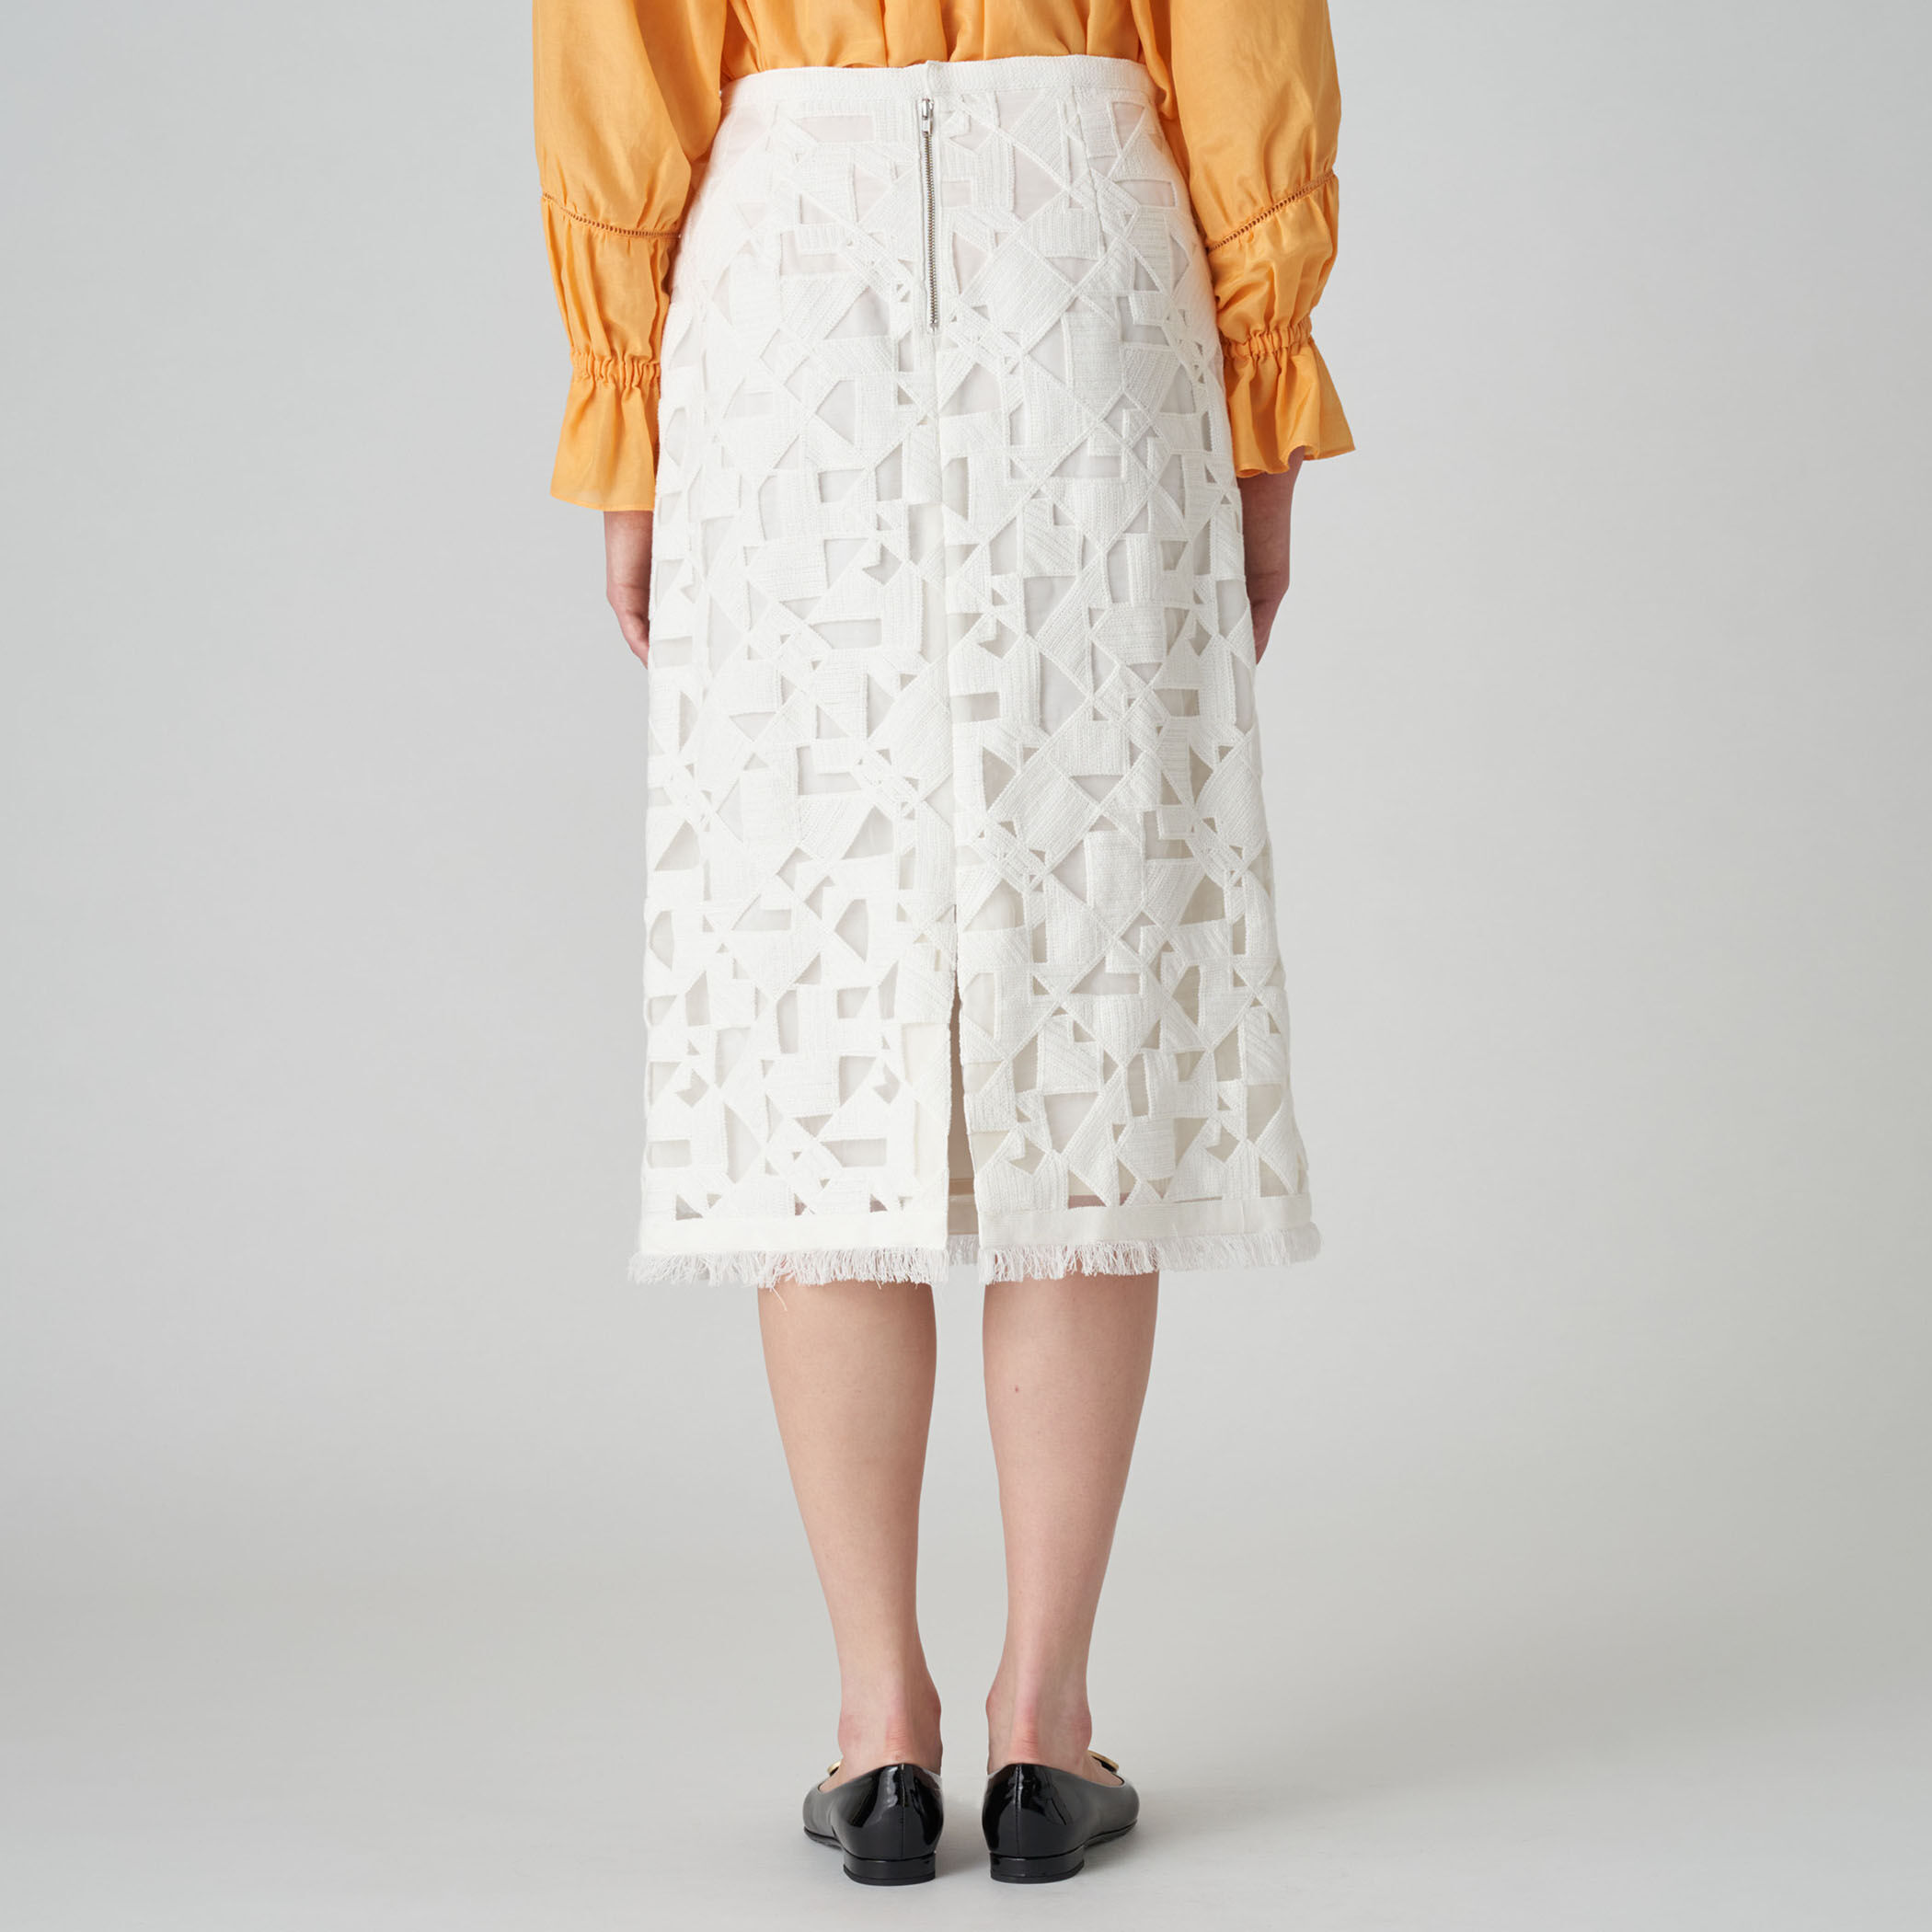 【‎Drawer ドゥロワー】ホワイト モザイク ミニ スカート